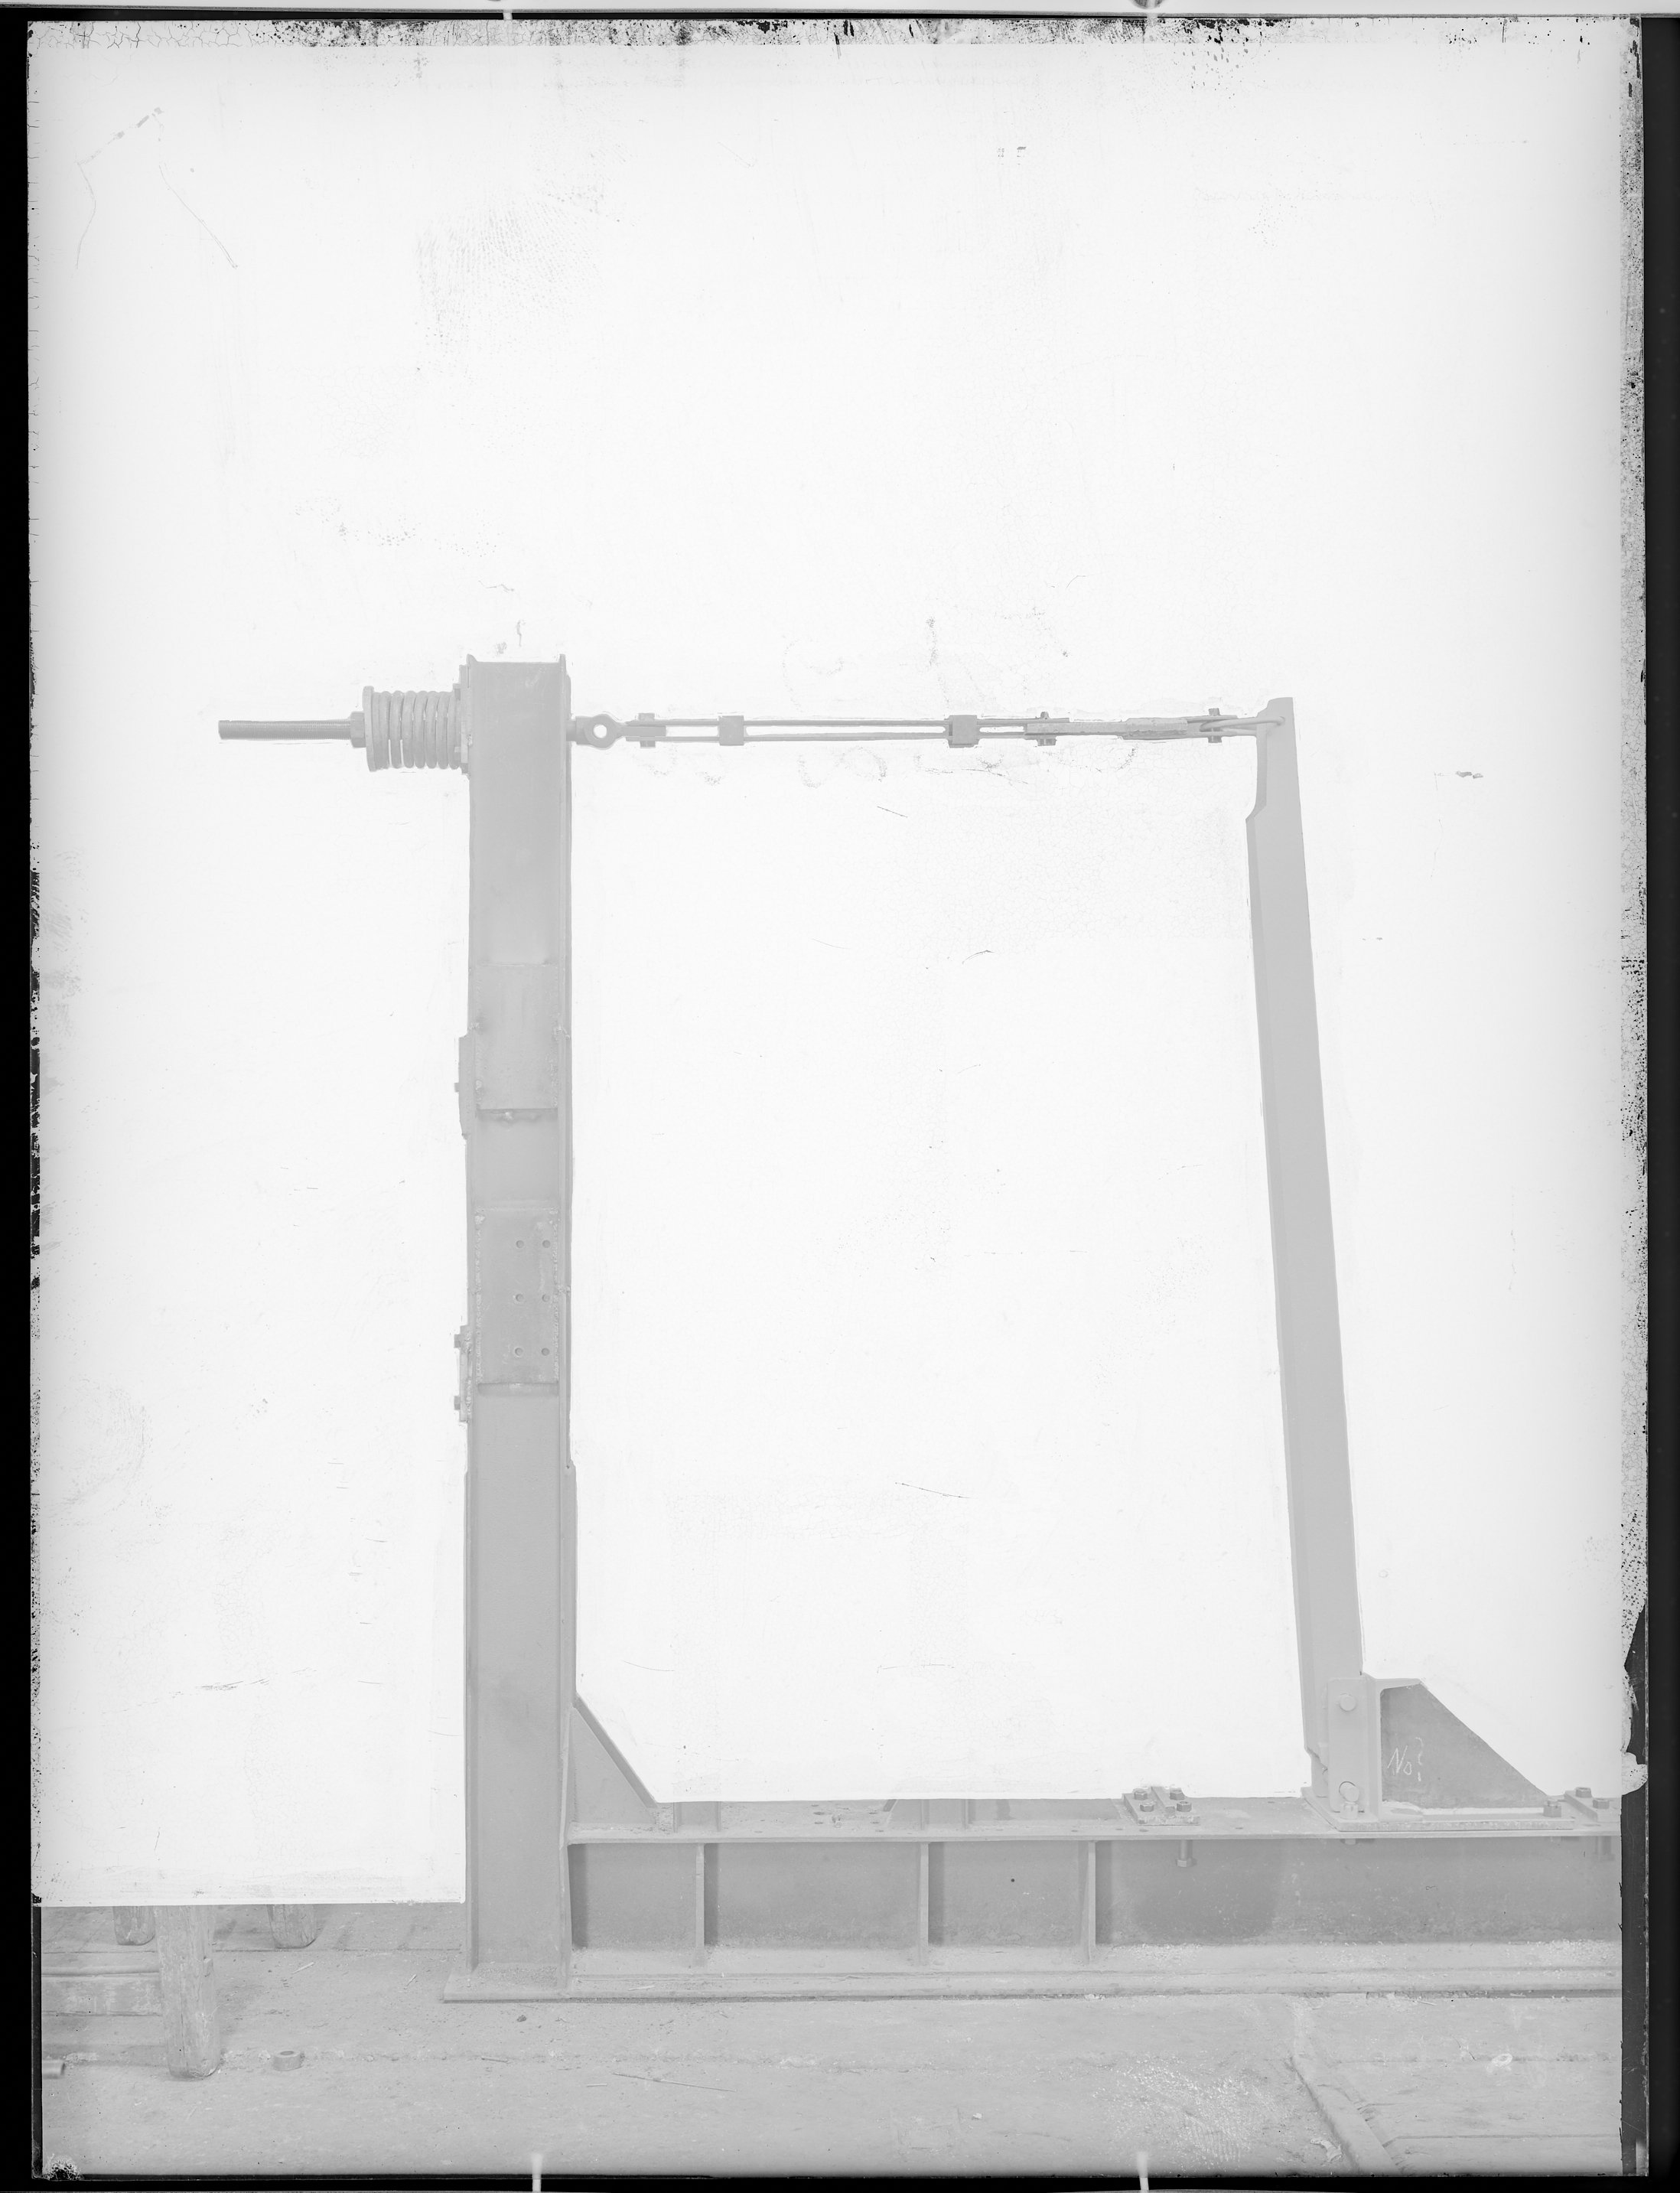 Fotografie: Versuchsaufbau zur Messung von Zugbelastung an eingespanntem Bauteil, 1950. (Schenkung der Bombardier Transportation, Werk Görlitz | Eigentum/Sammlung der Verkehrsmuseums Dresden gGmbH CC BY-NC-SA)